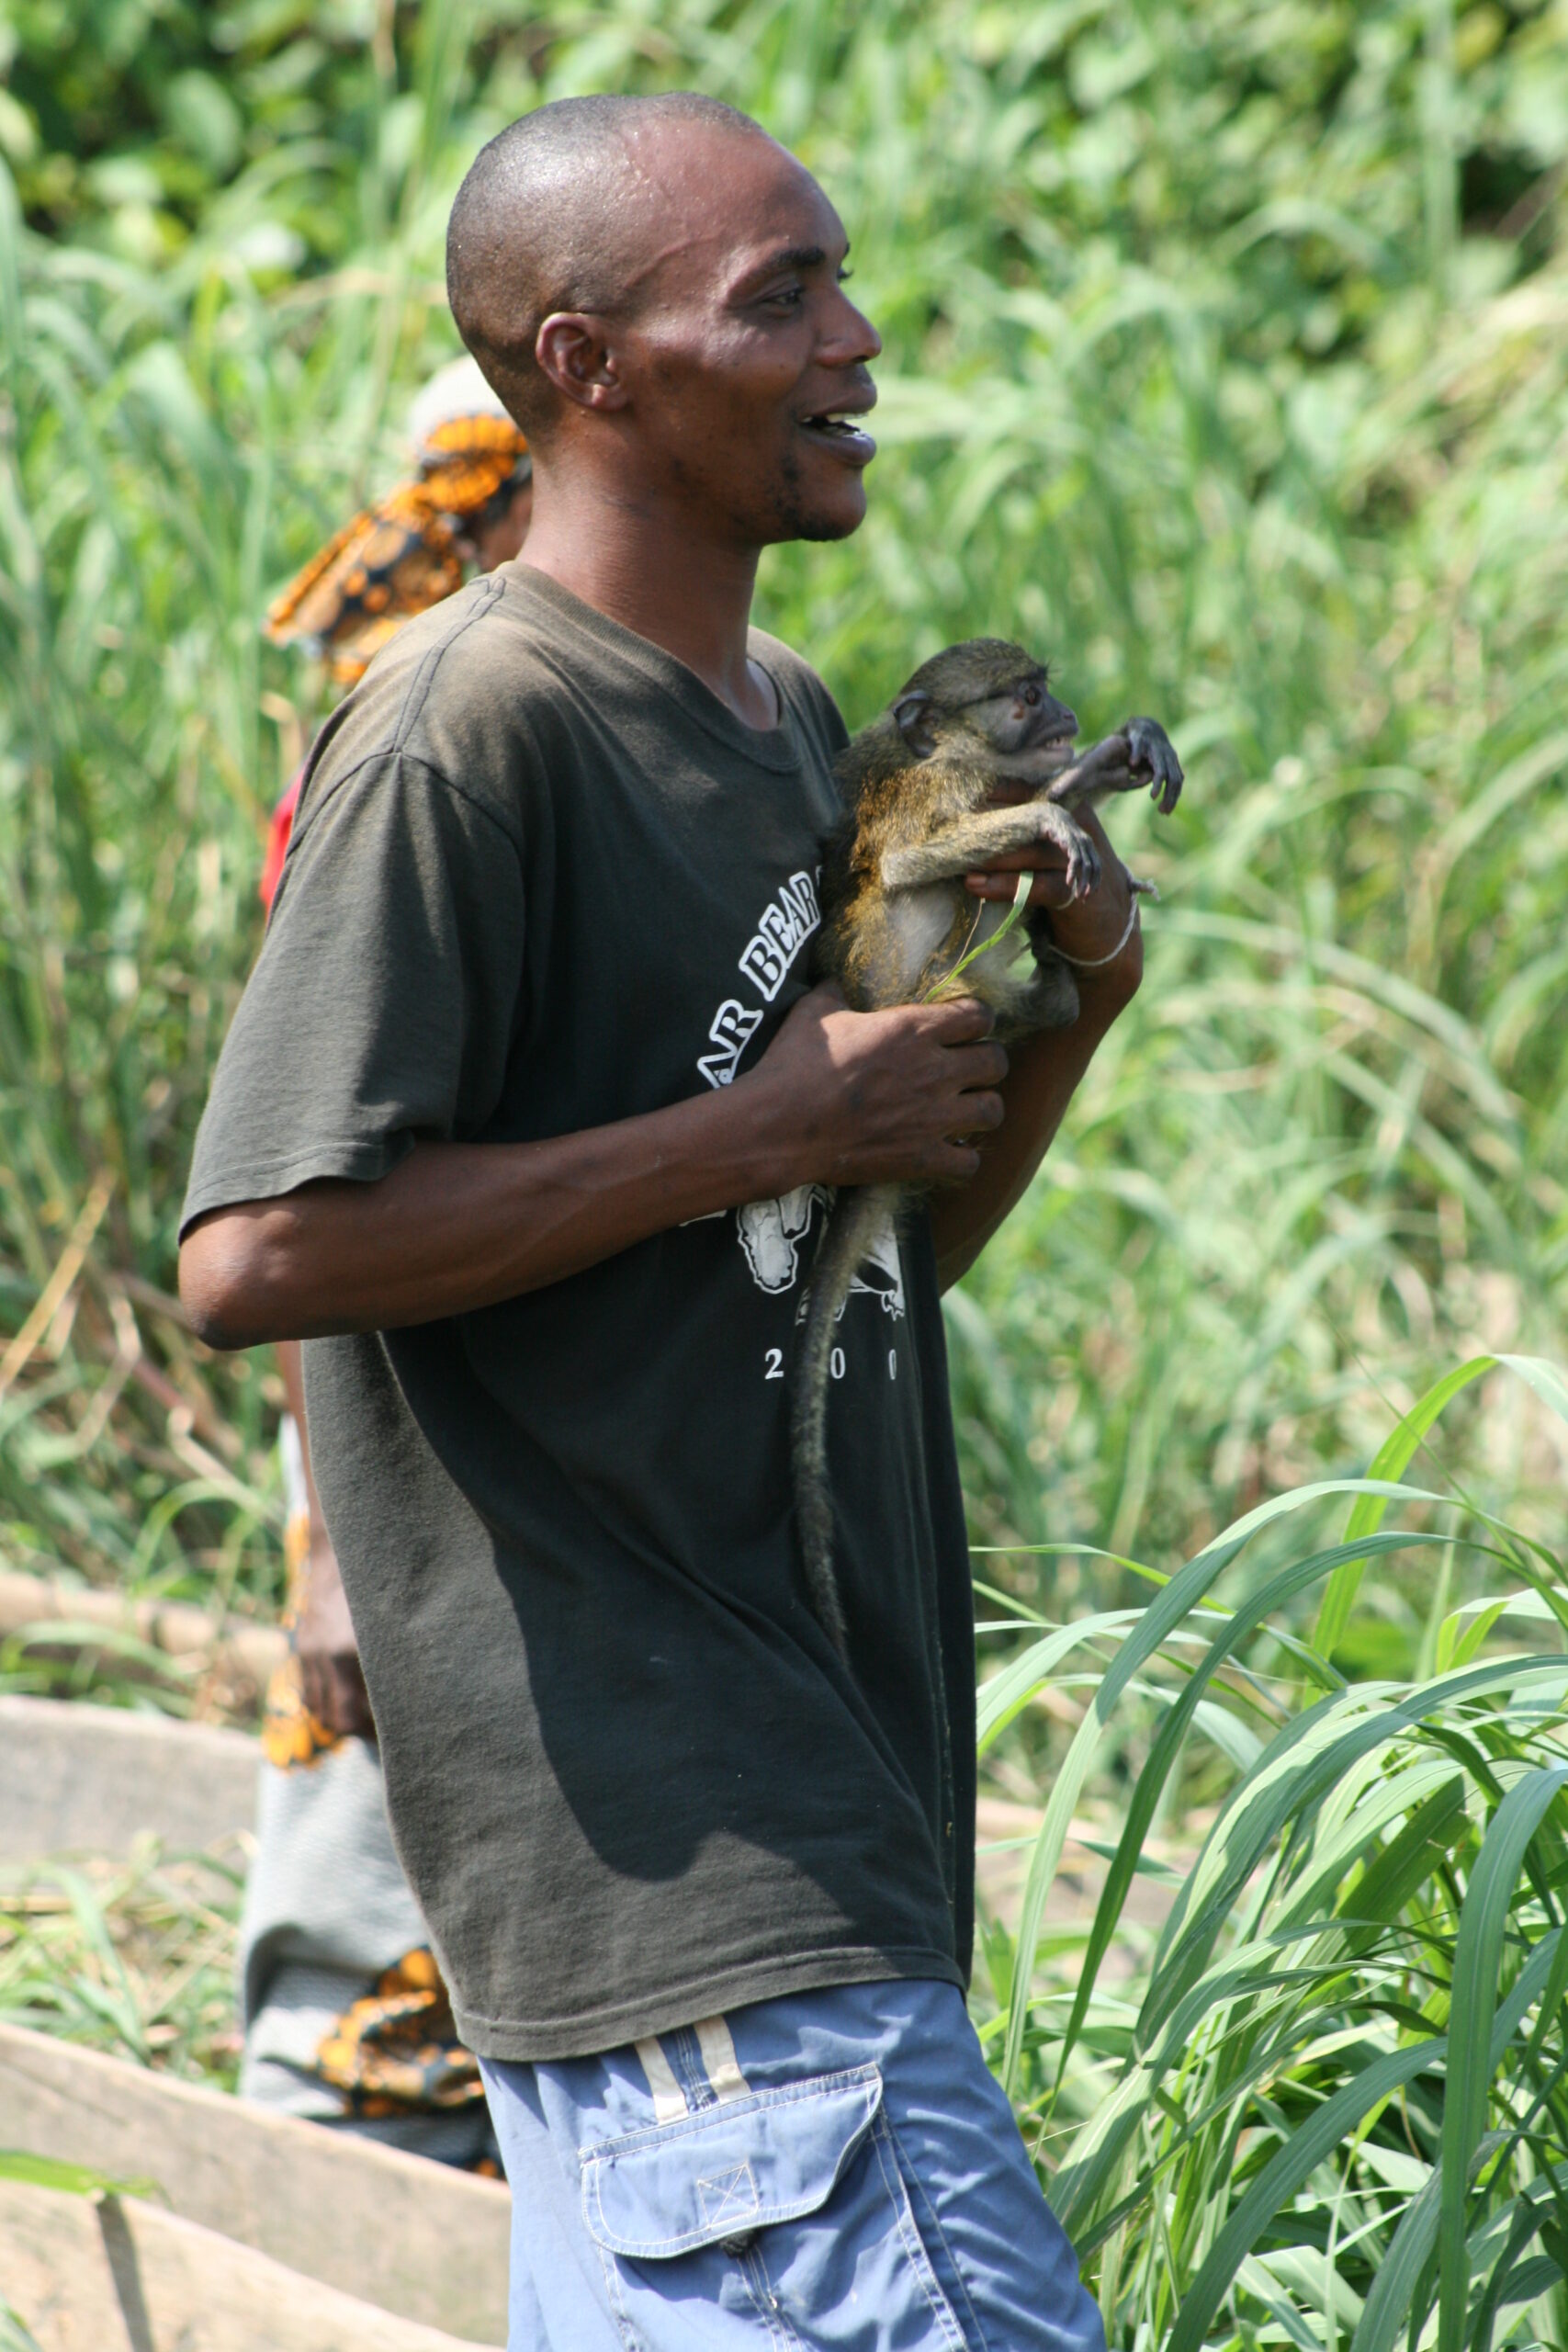 Man with monkey at Mokonzi market